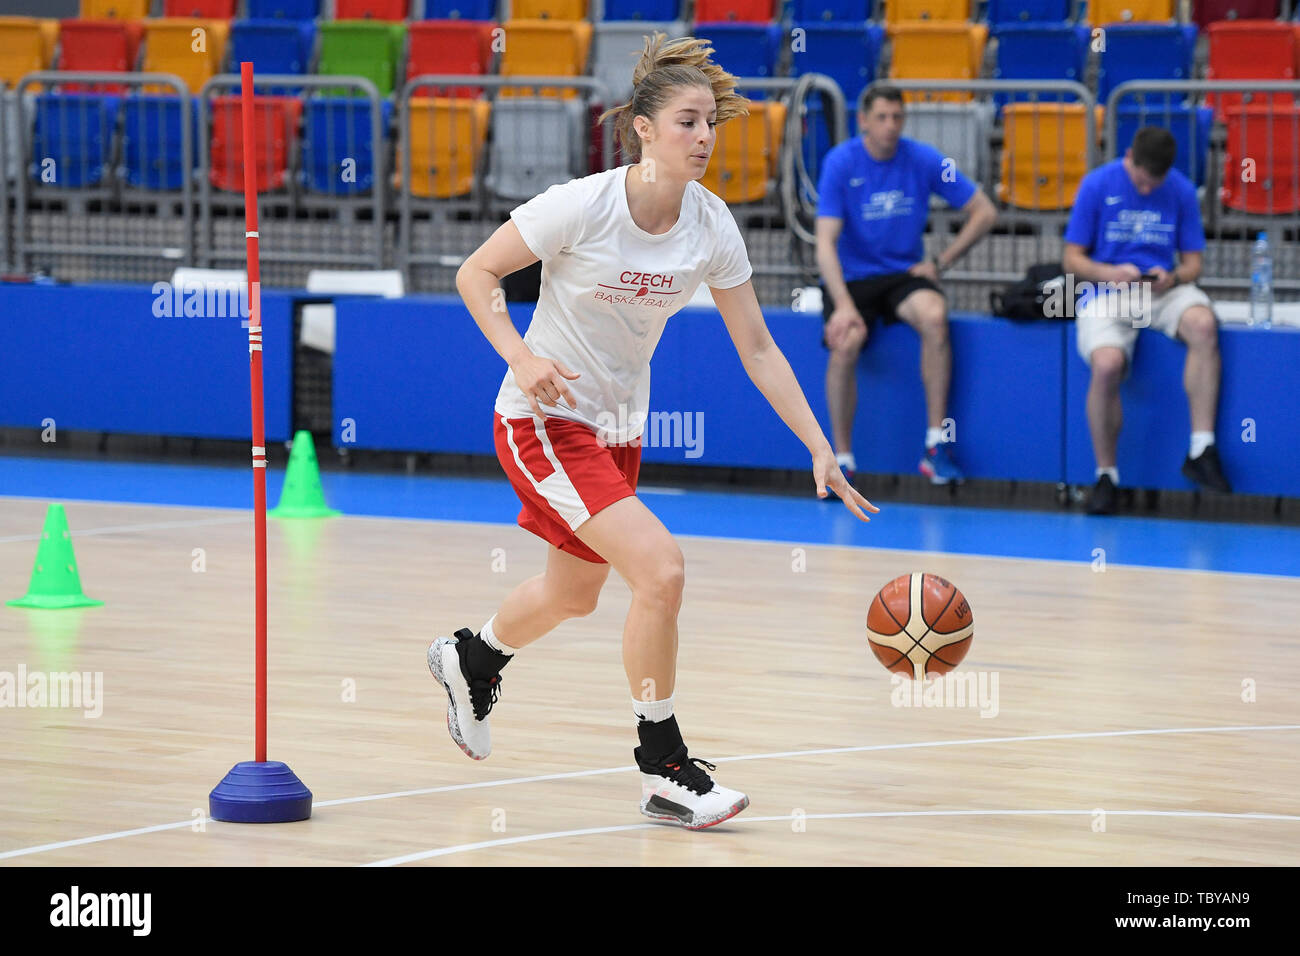 Karolina Elhotova de la République tchèque de l'équipe nationale de basket-ball assiste à une session de formation avant le championnat d'Europe (FIBA EuroBasket 2019 femmes), le 4 juin 2019, à Prague, en République tchèque. (CTK Photo/Ondrej Deml) Banque D'Images